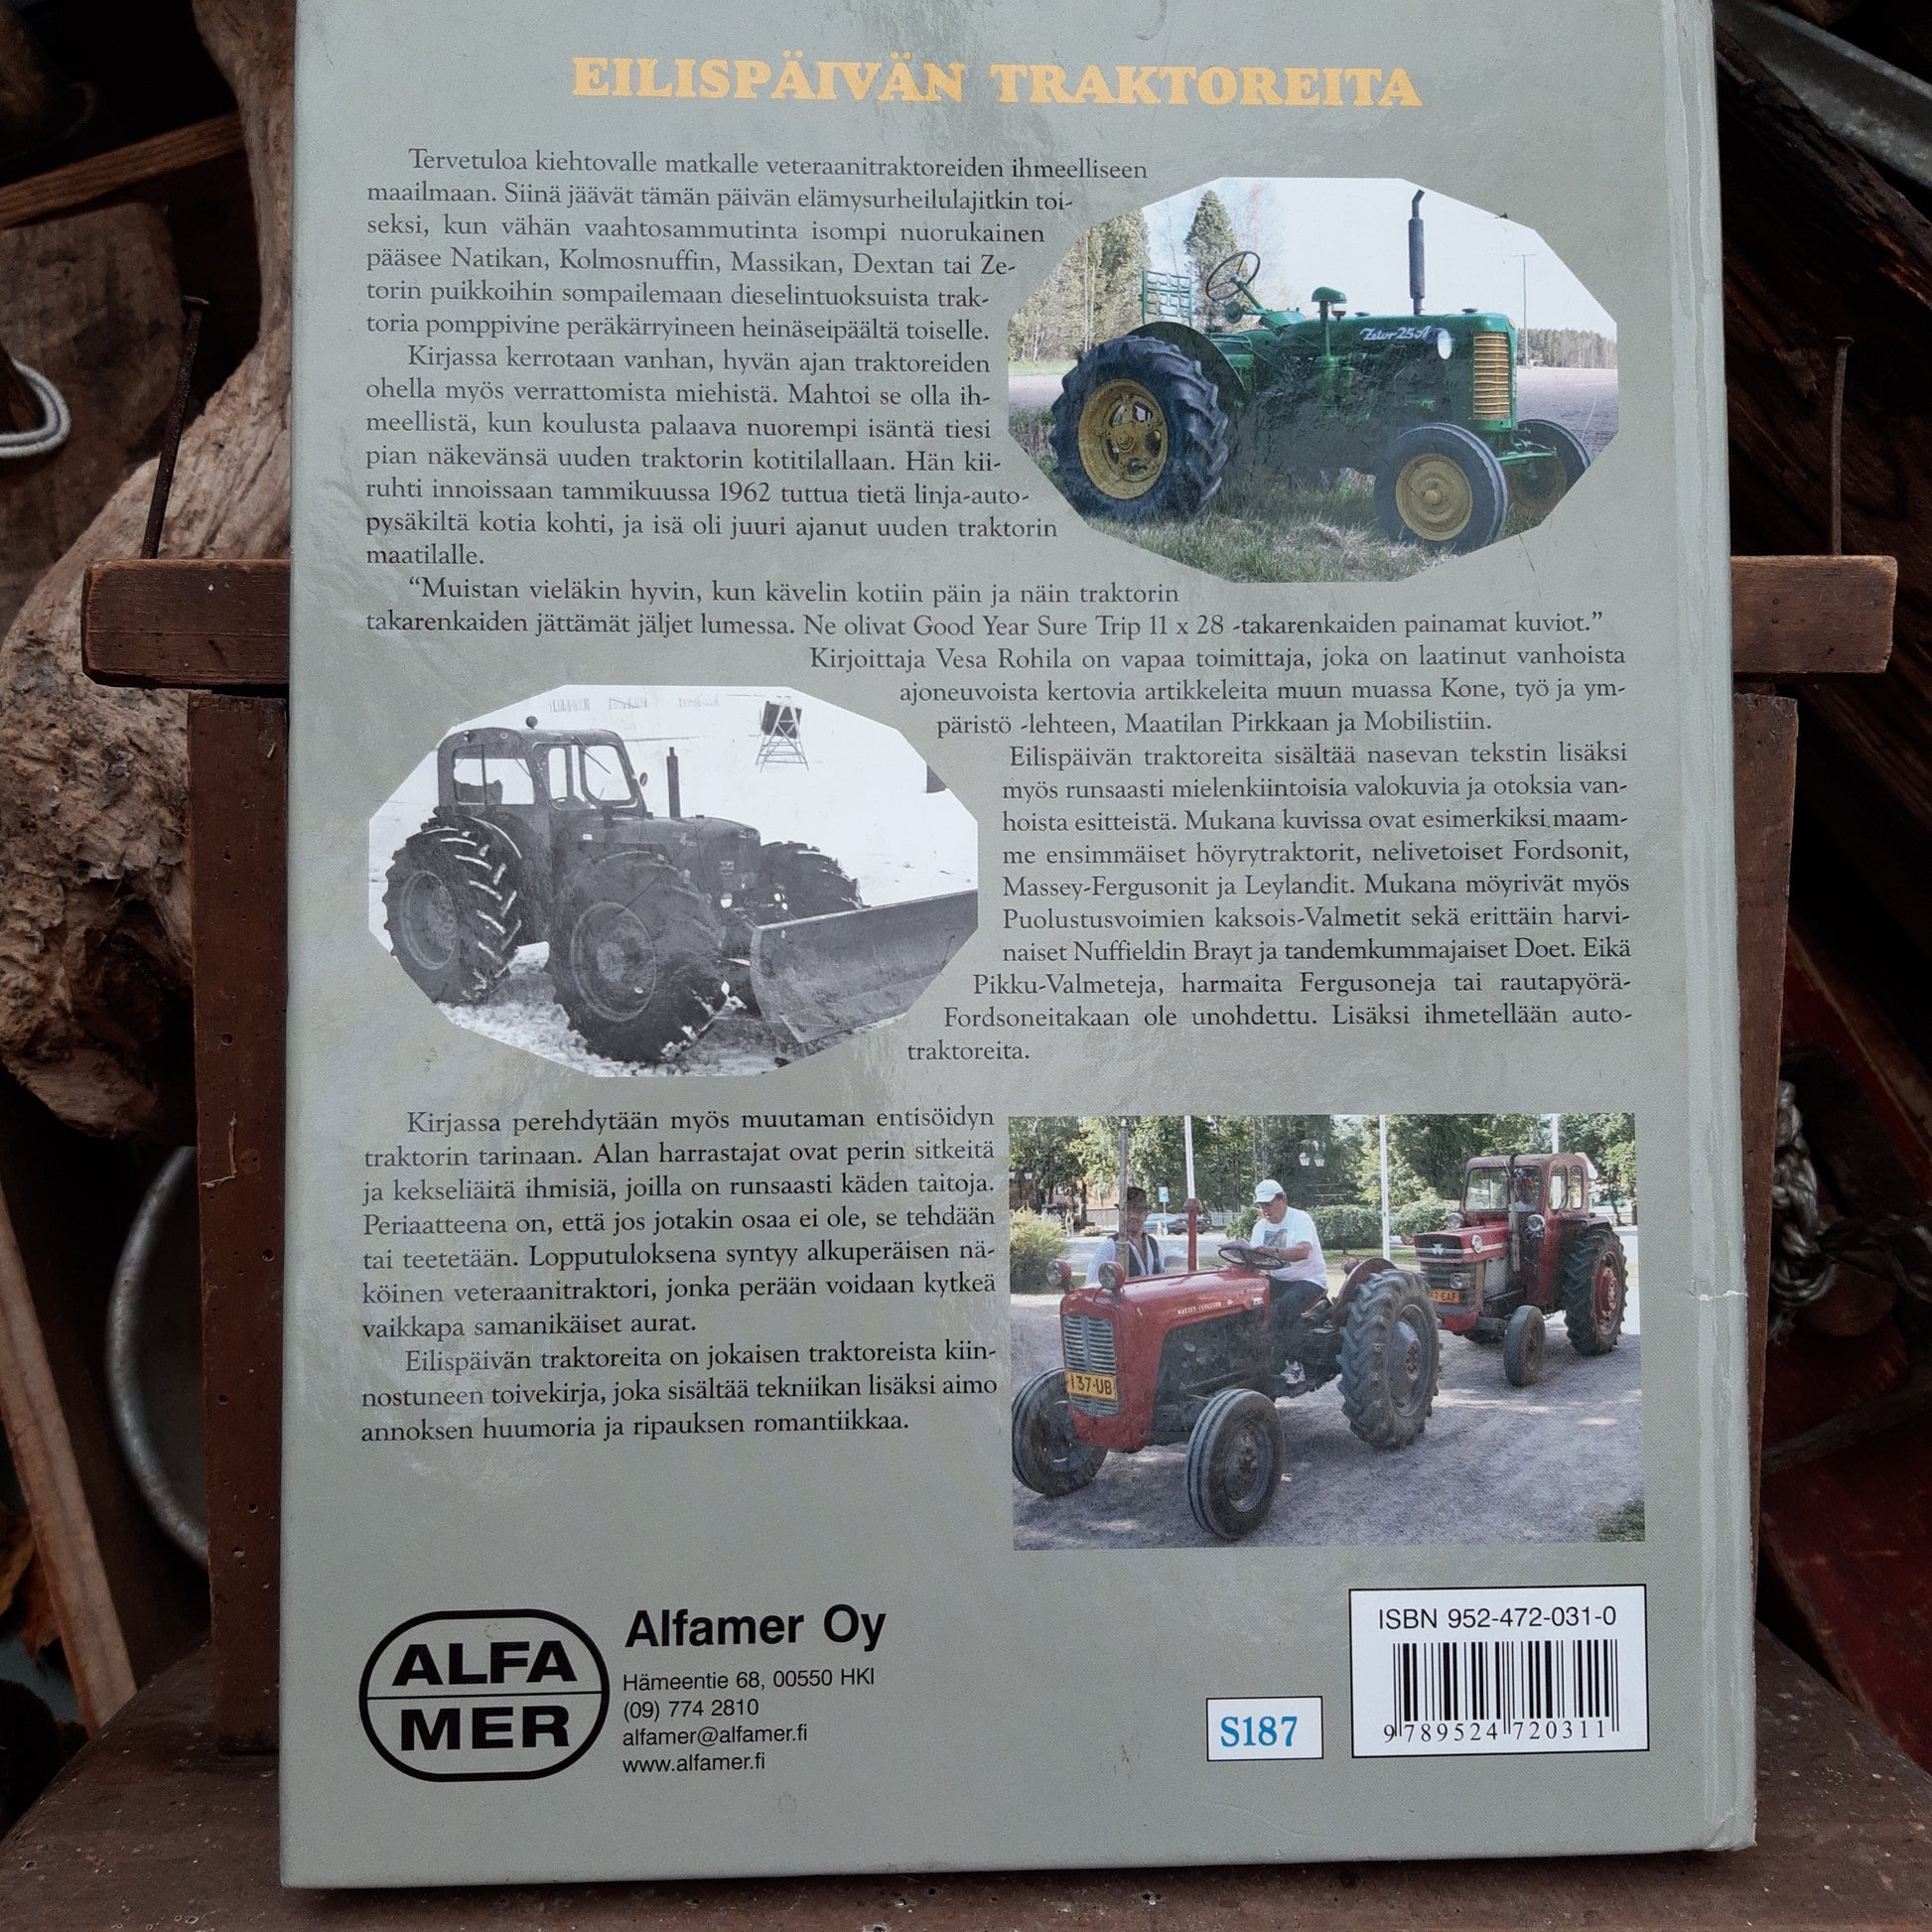 eilispäivän traktoreita - kurkistus vanhojen traktoreiden ihmeelliseen maailmaan